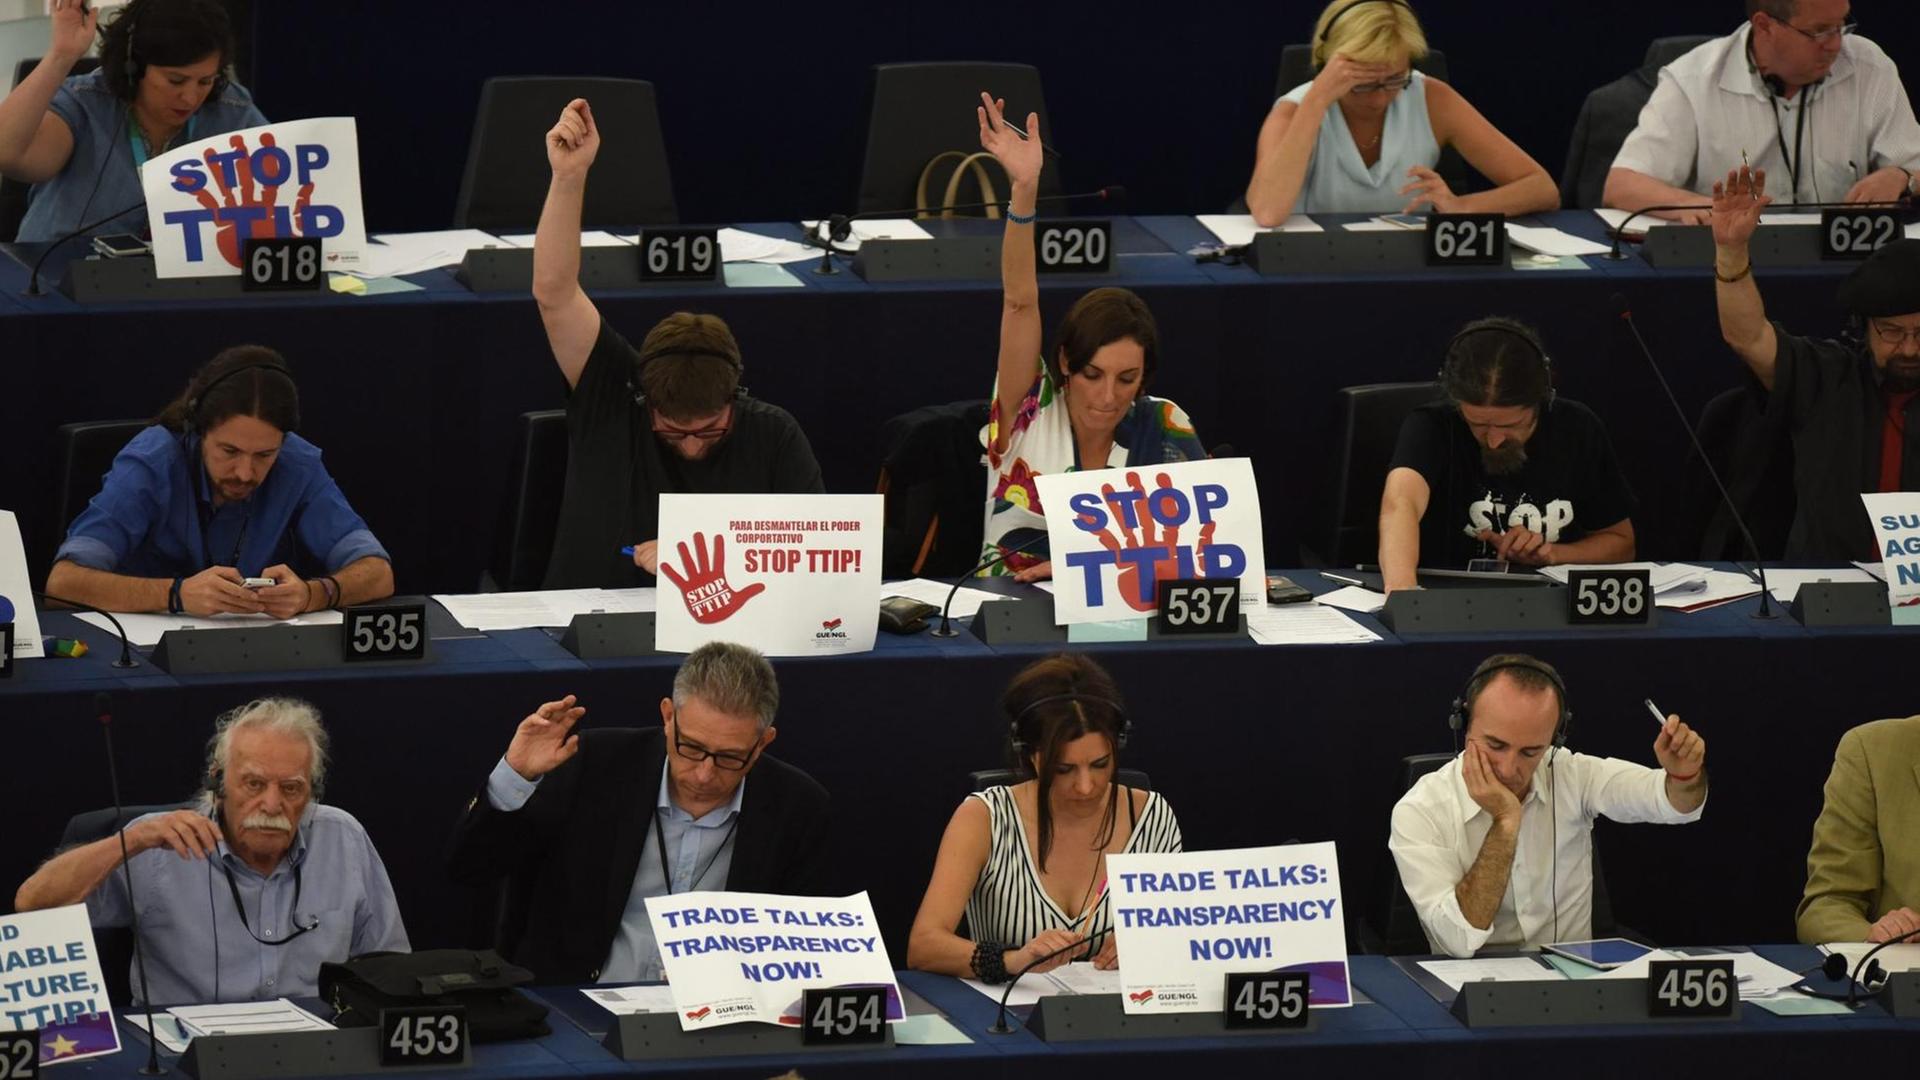 Vertreter der "Konföderalen Fraktion der Vereinten Europäischen Linken/Nordischen Grünen Linken" protestieren im Europa-Parlament gegen das Freihandelsabkommen TTIP.